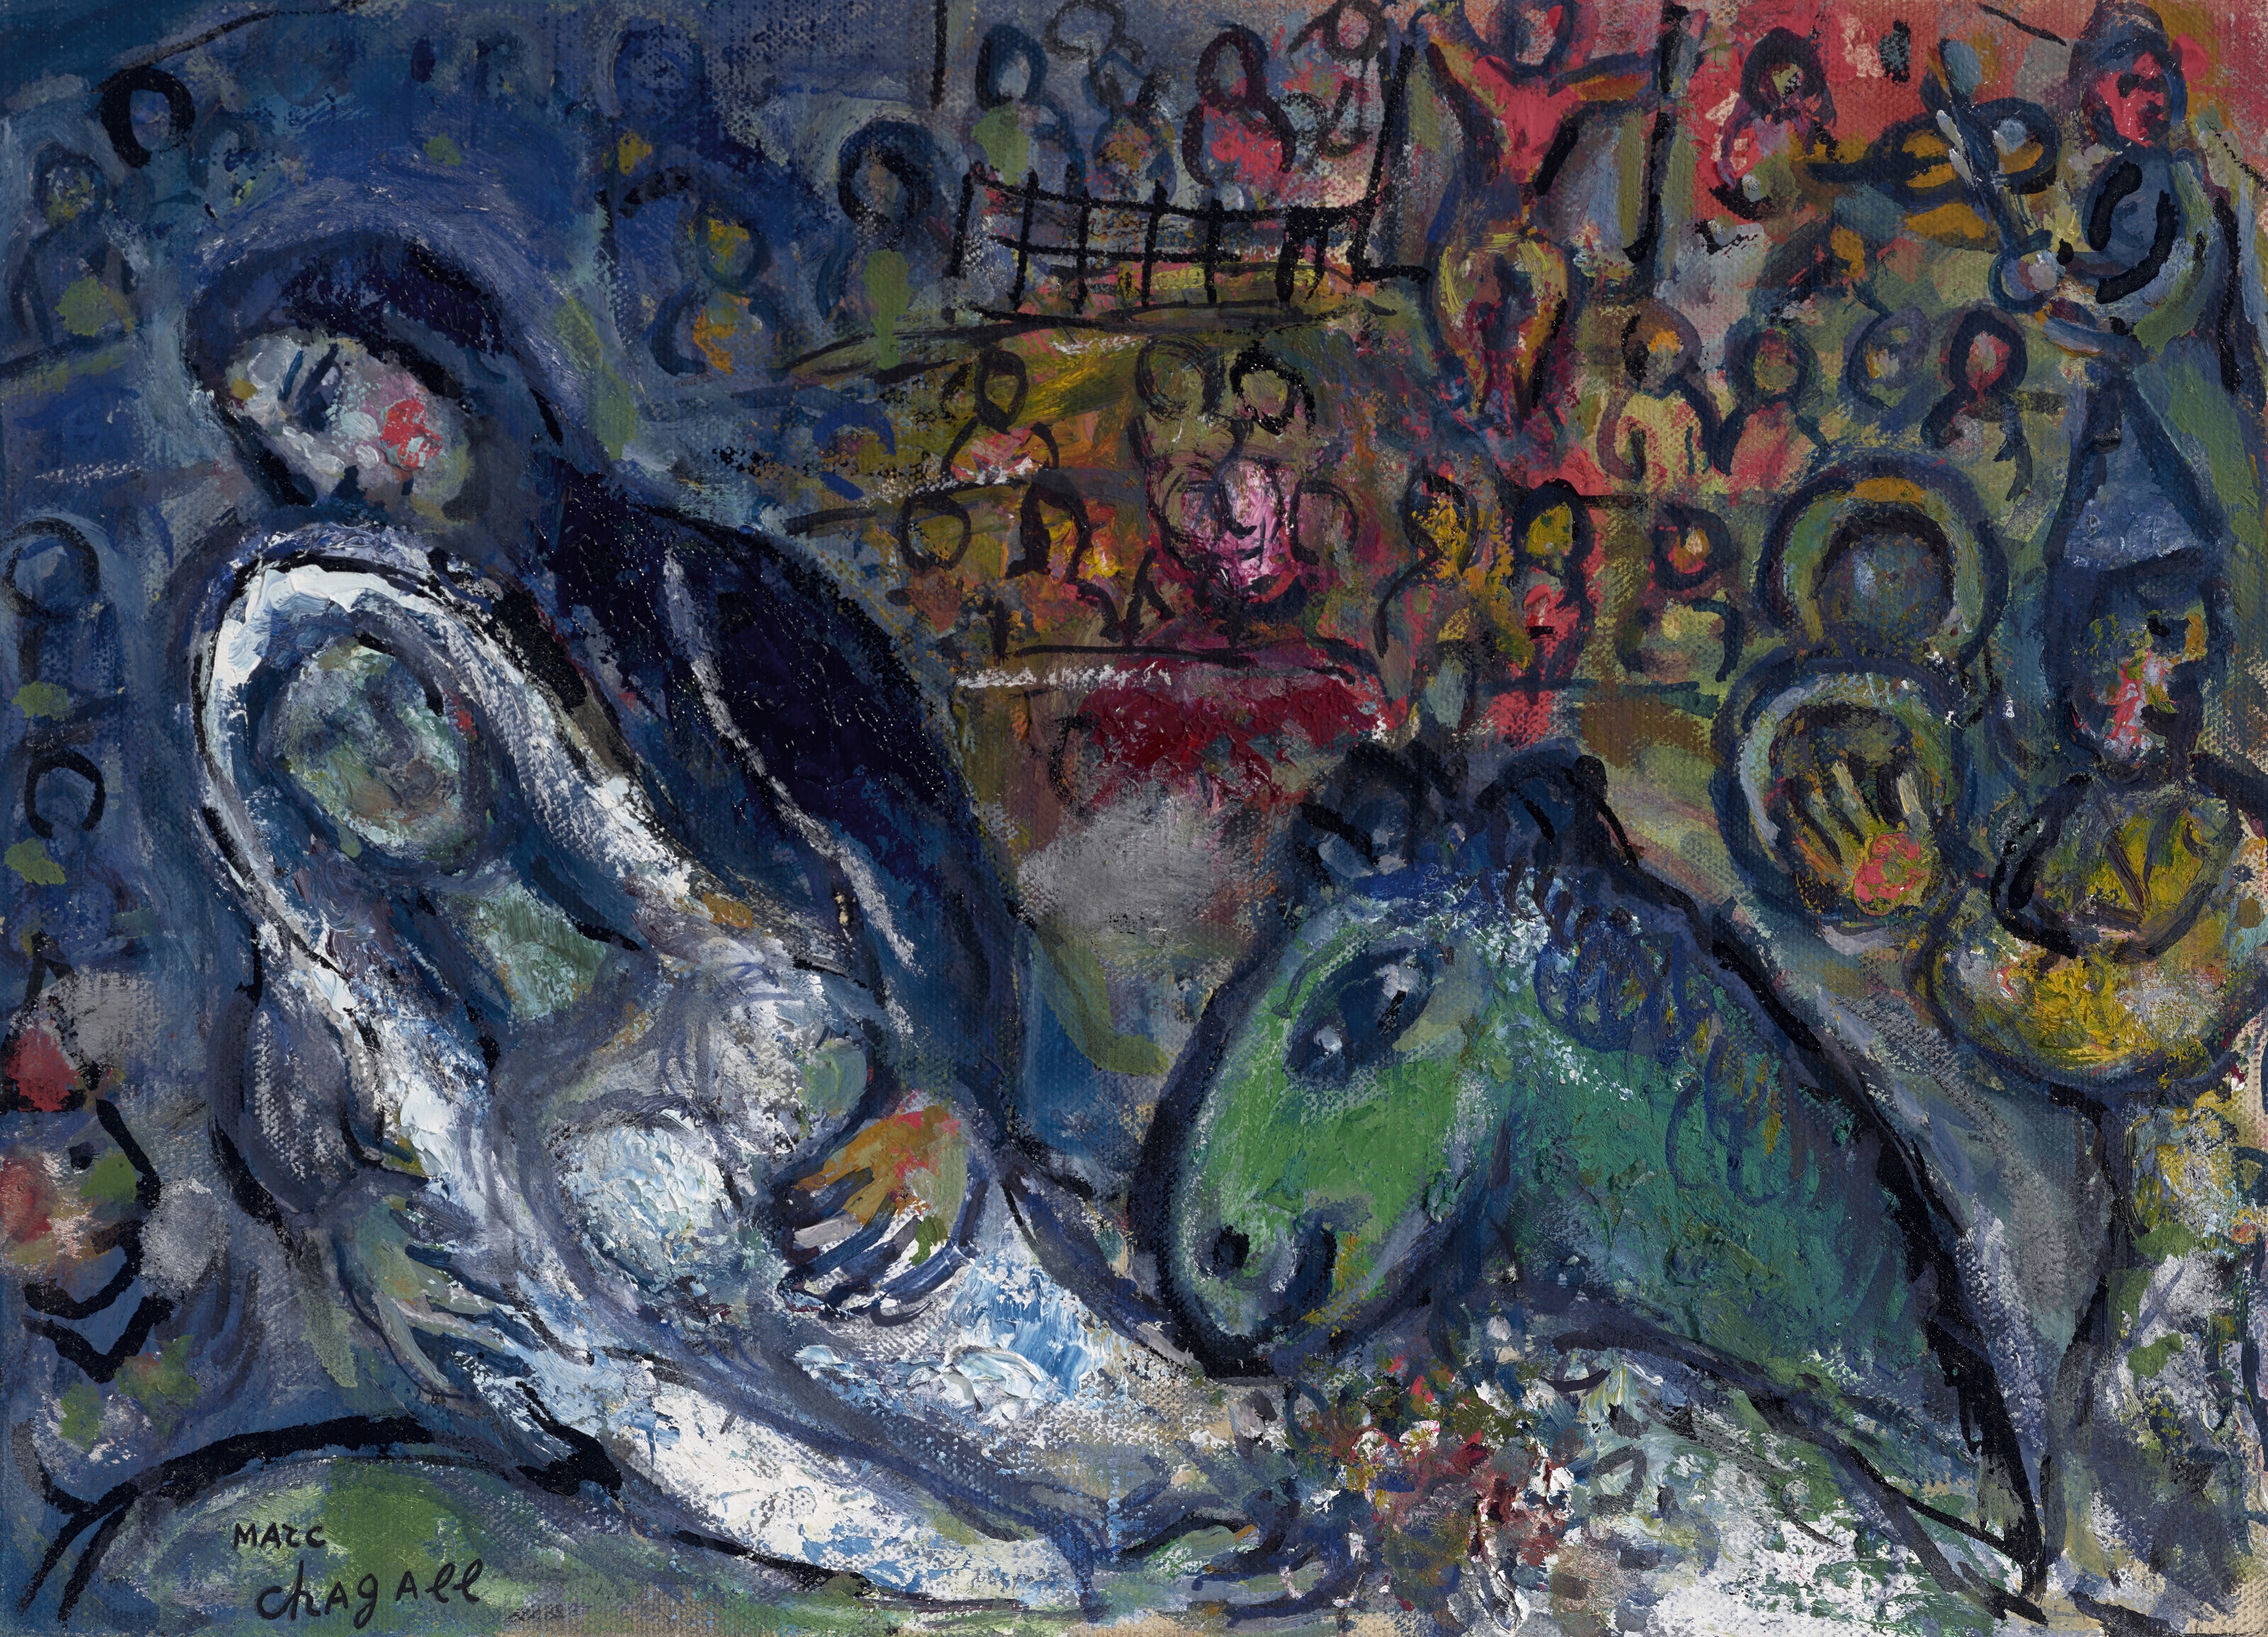 Les mariés au cirque by Marc Chagall, circa 1965